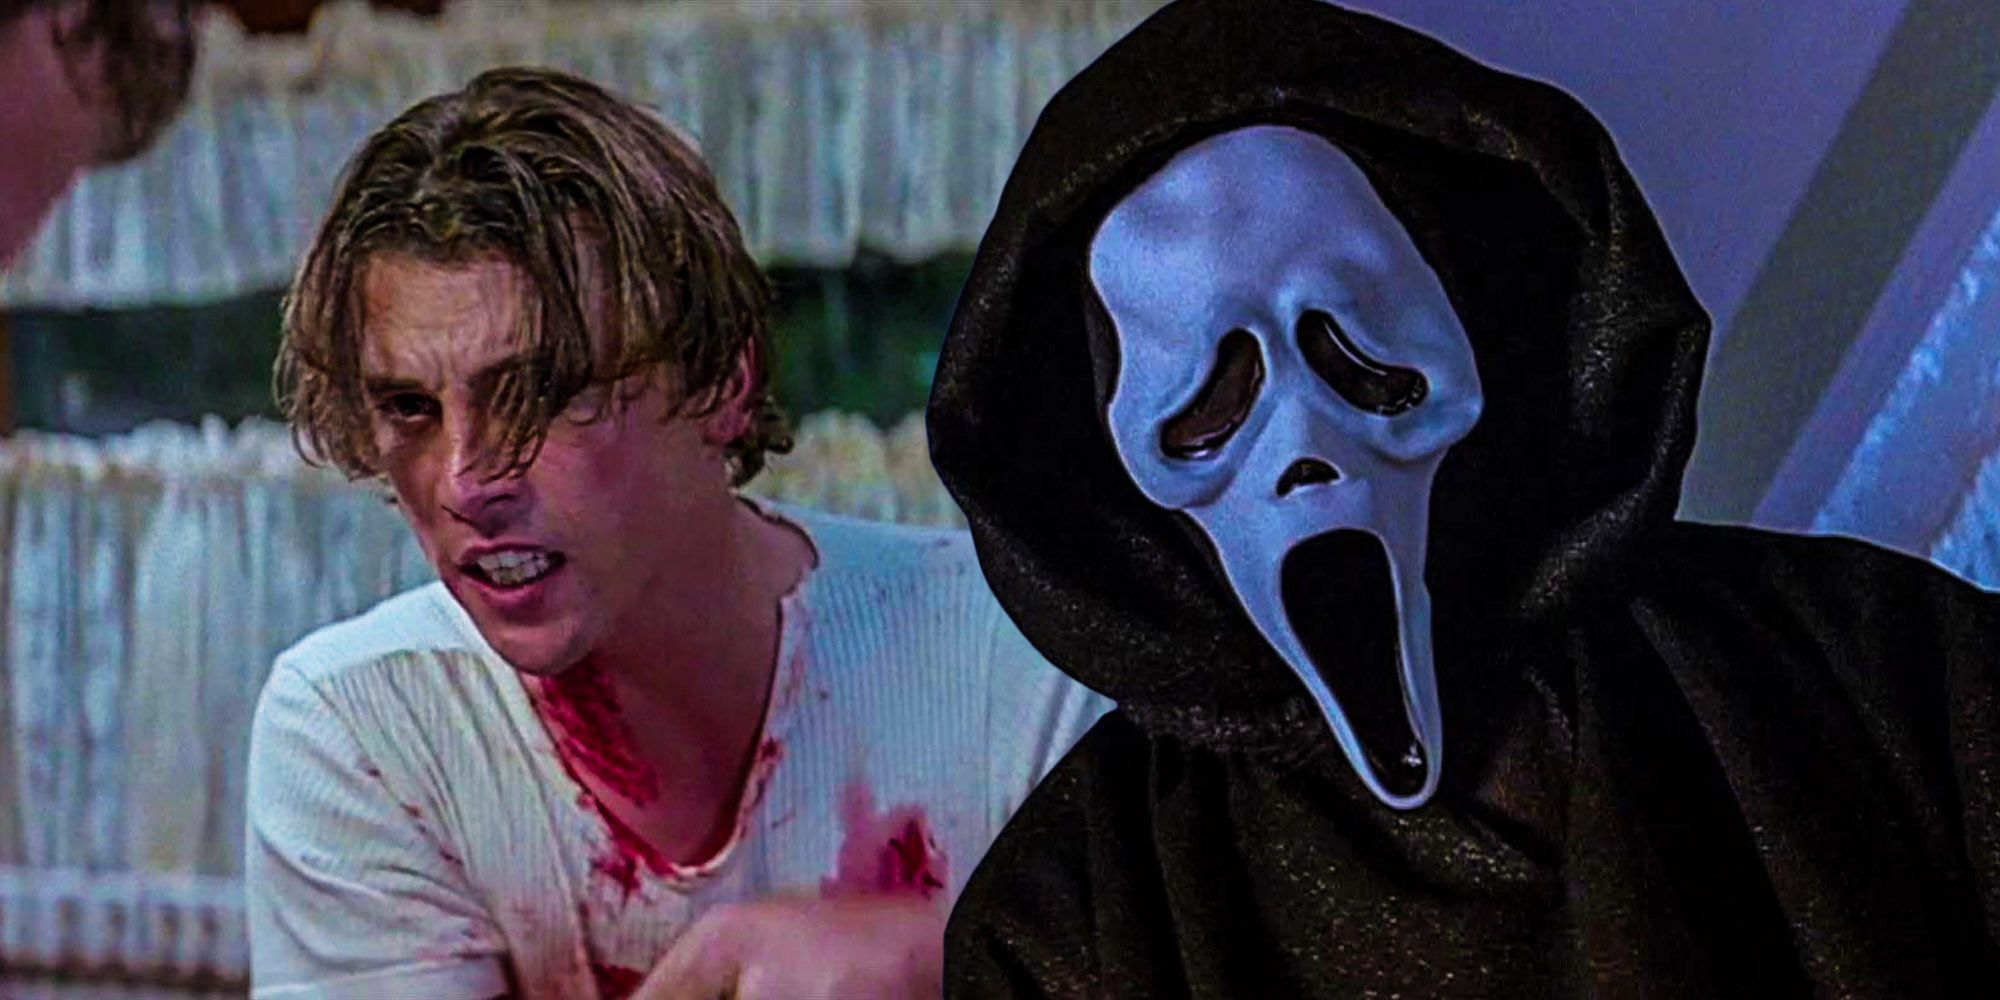 Scream 2022 Ending & Ghostface Killer Identity Explained